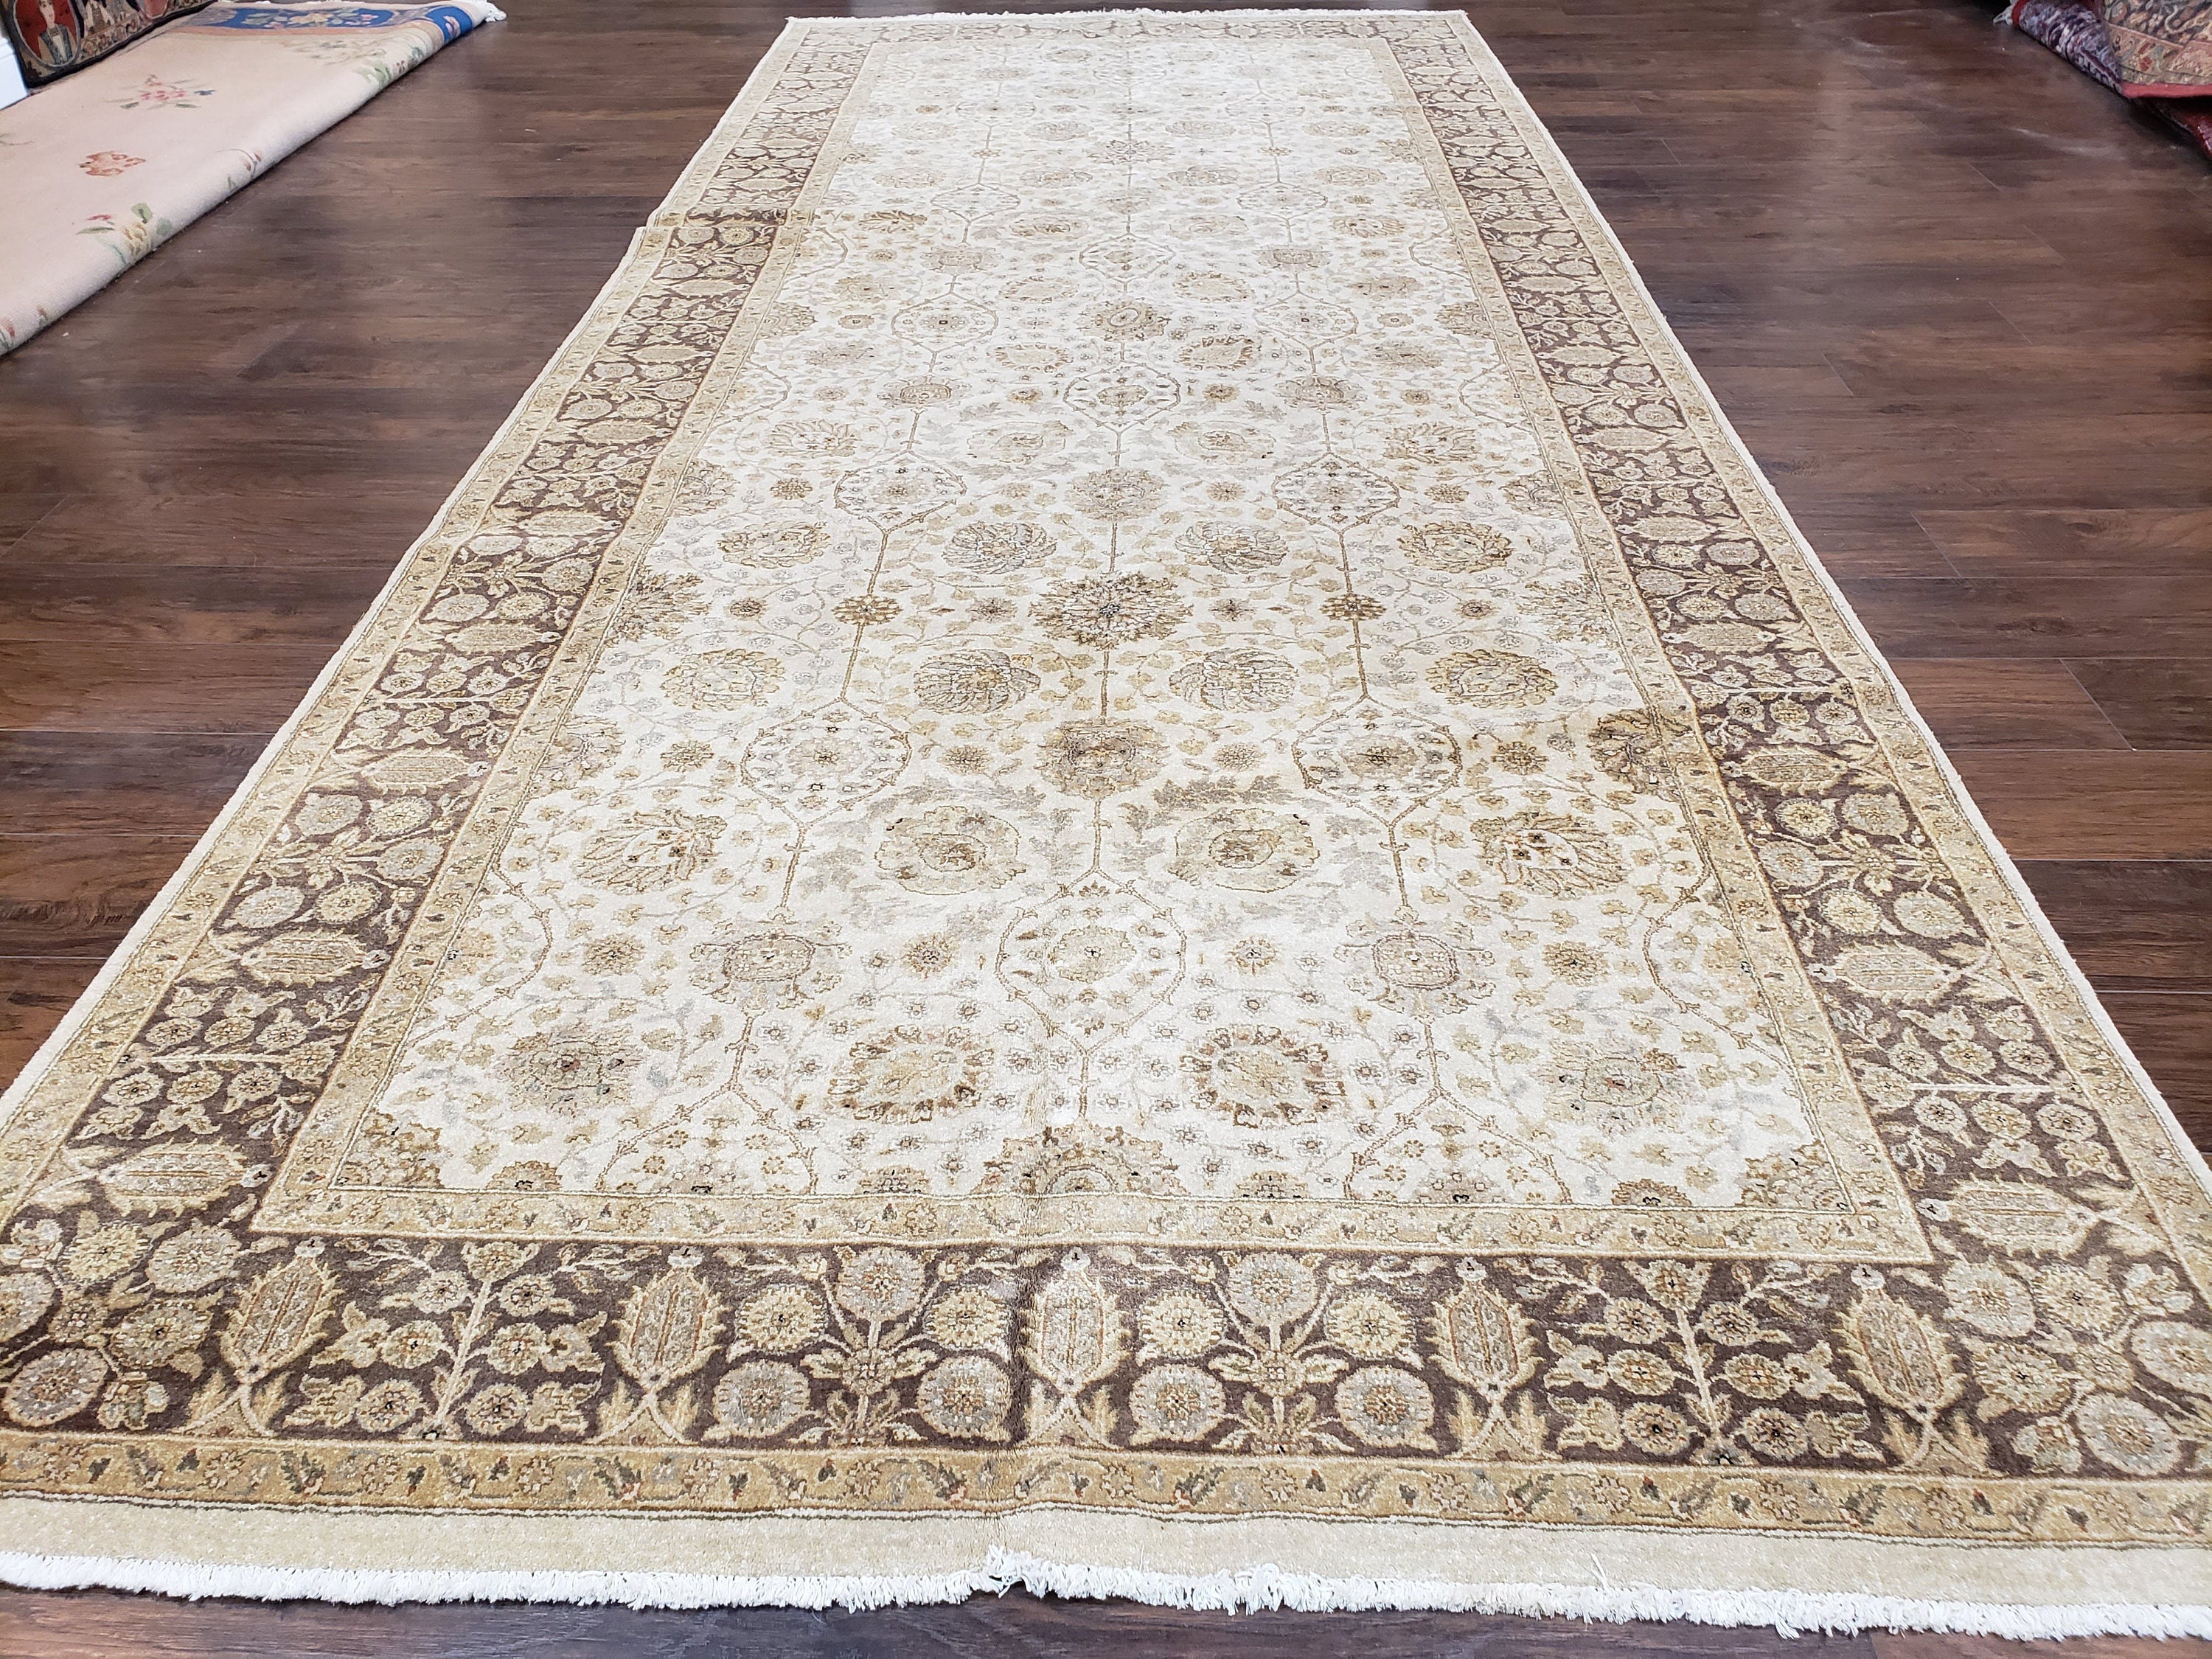 Tappeto corridoio lungo e largo 6 x 14,8, tappeto corridoio, tappeto  persiano Pak pakistano, design Haji Jalil, floreale allover, beige,  vintage, fatto a mano -  Italia